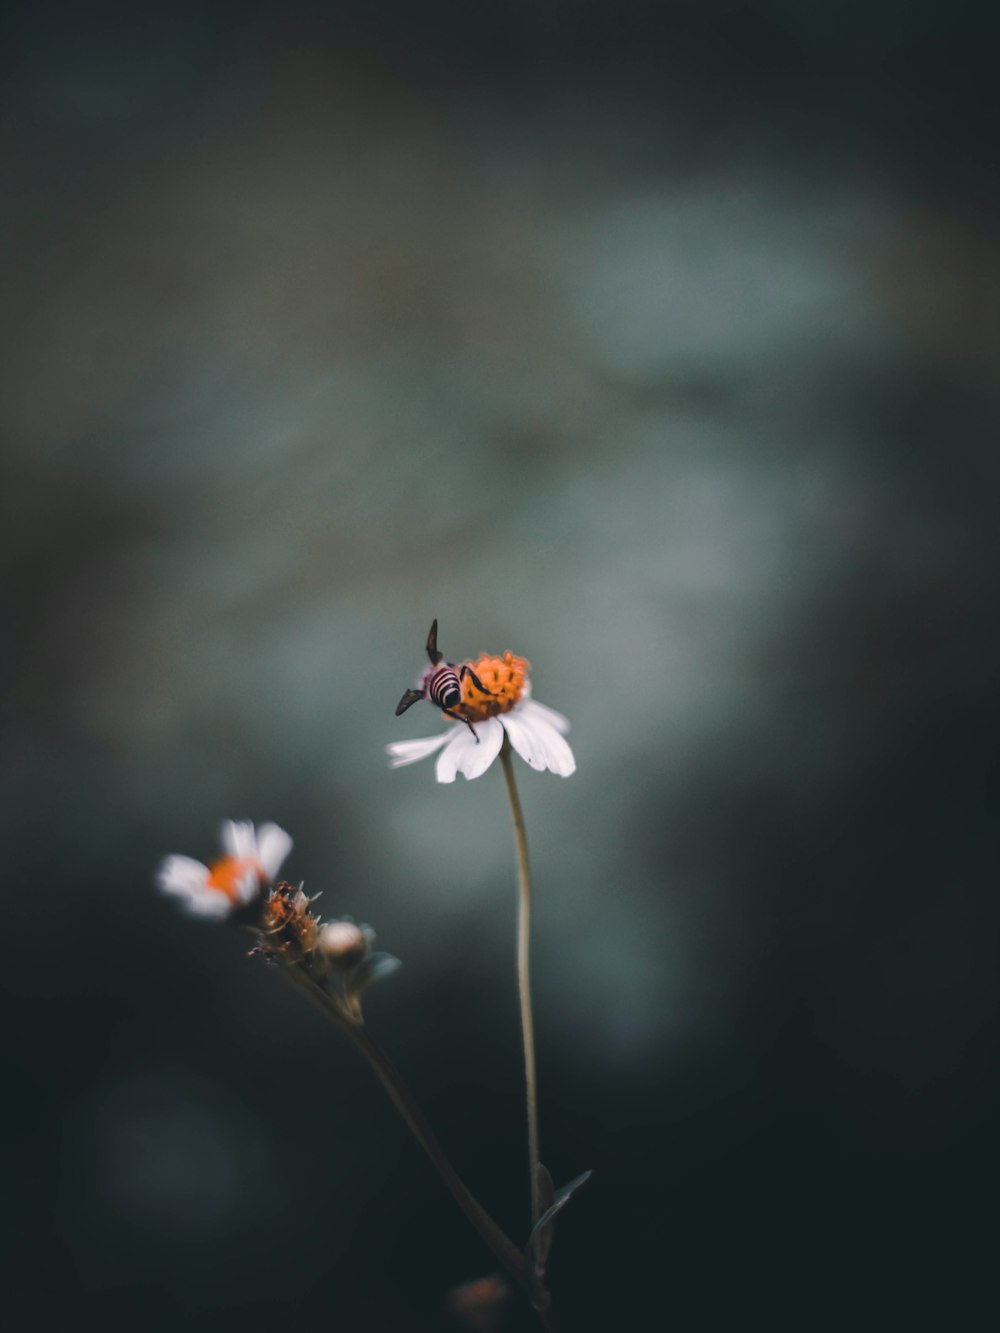 Photographie de mise au point de l’abeille sur la fleur à pétales blancs